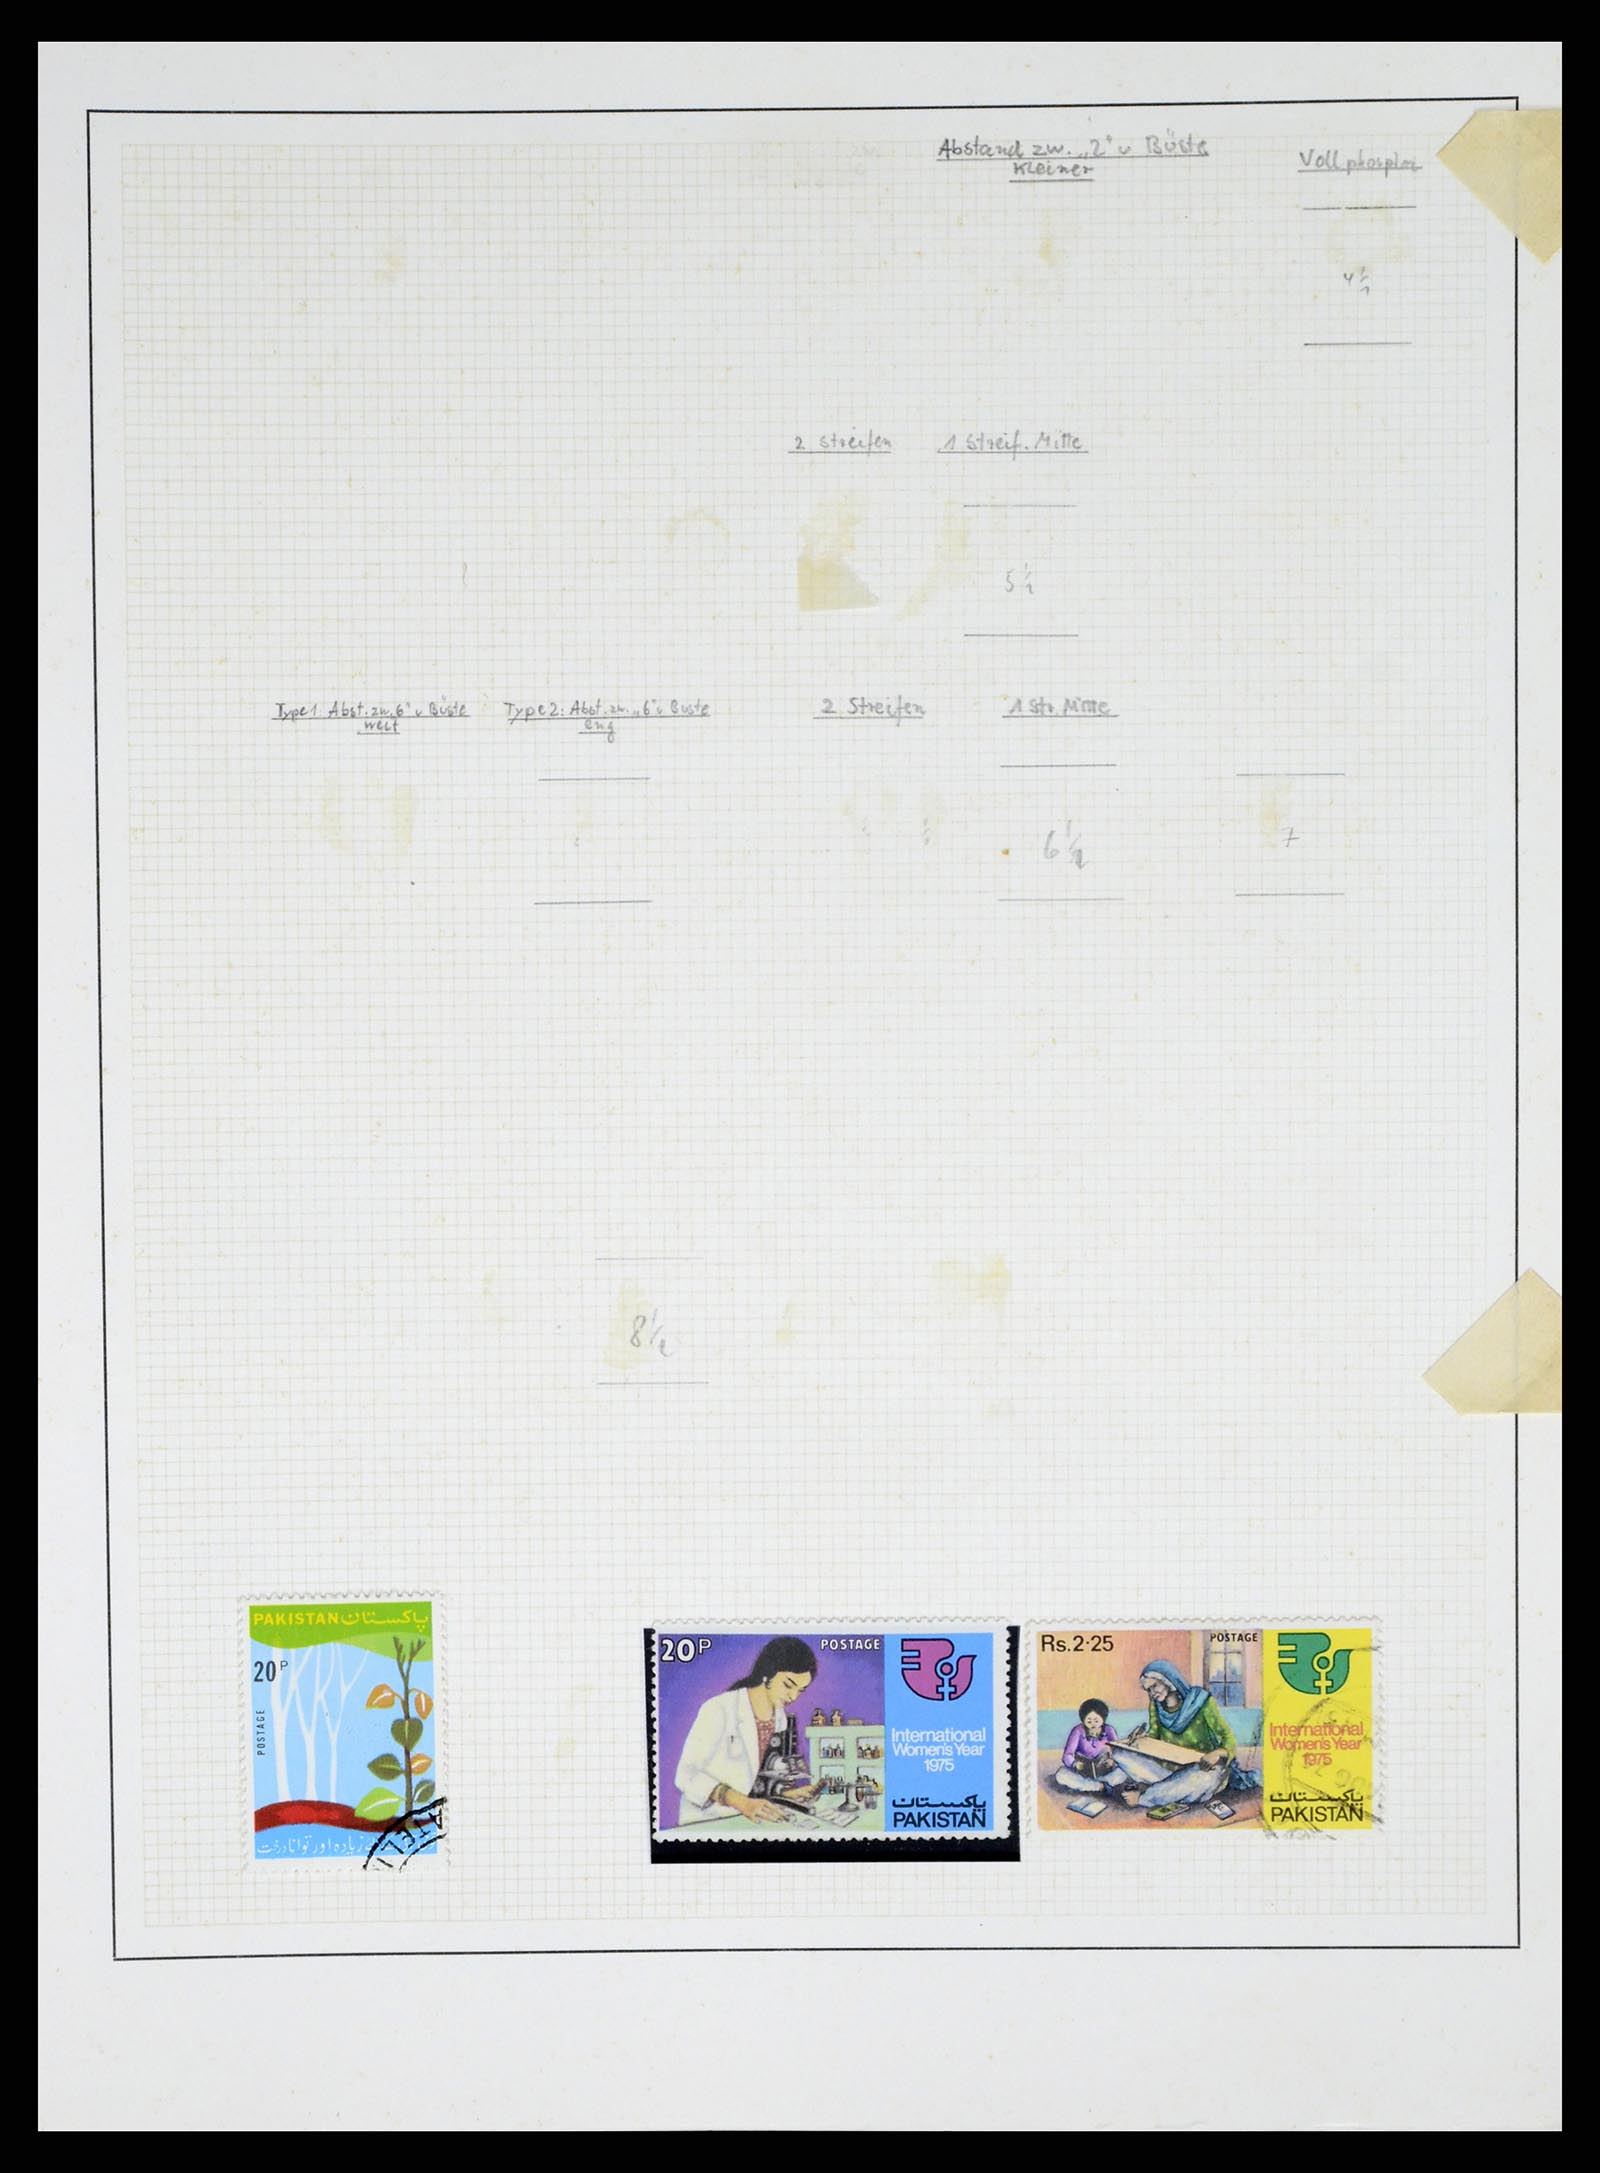 37619 037 - Stamp collection 37619 Pakistan/Bangladesh 1947-2000.